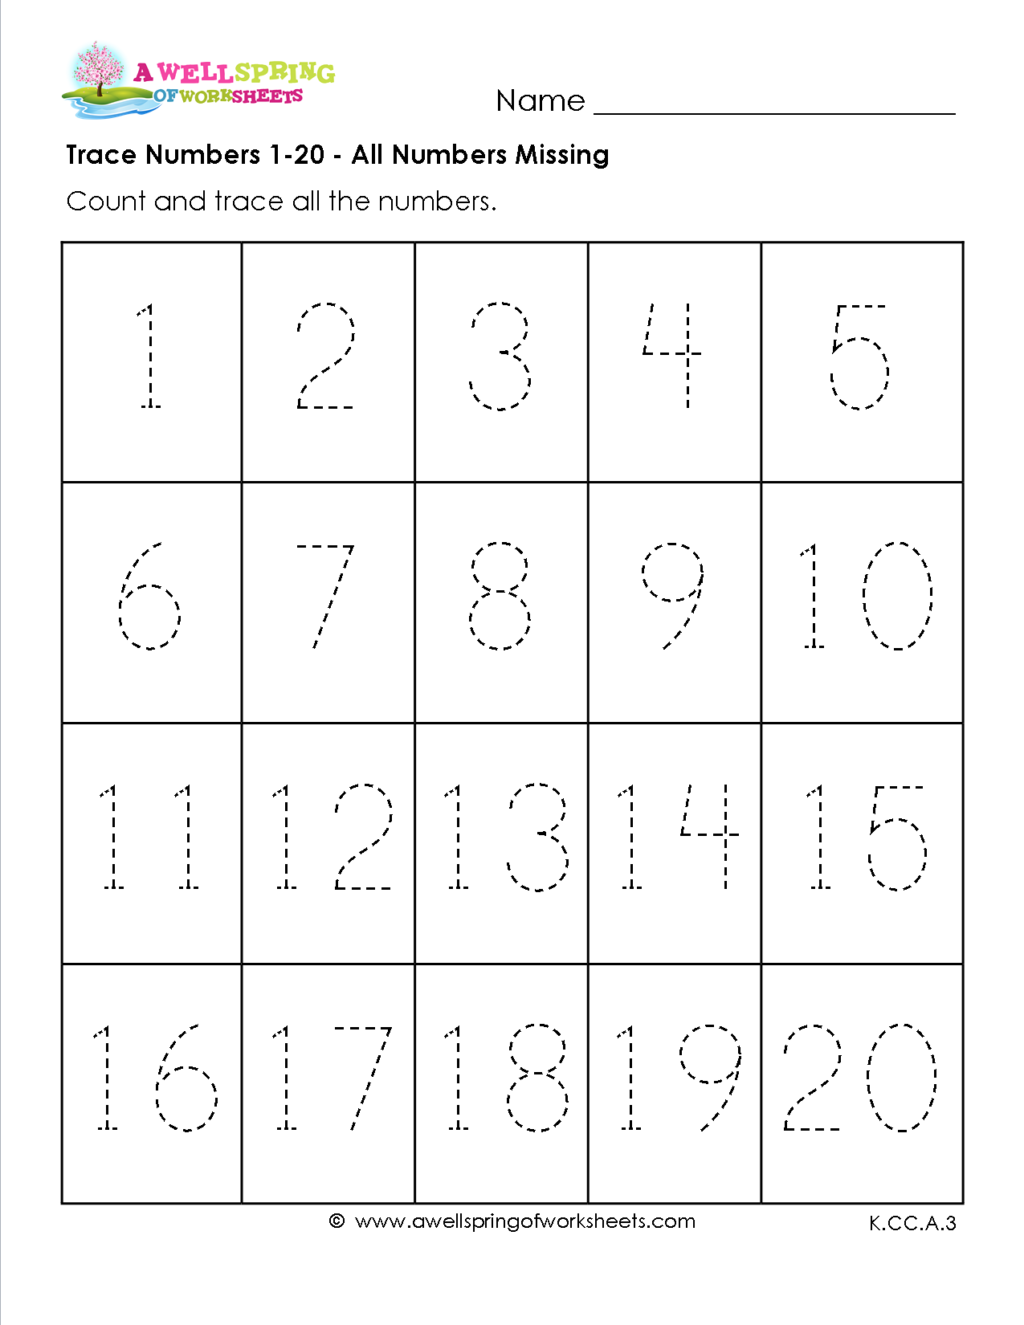 Worksheet ~ Worksheet Tracing Worksheets For Kindergarten intended for Alphabet Tracing Level 1